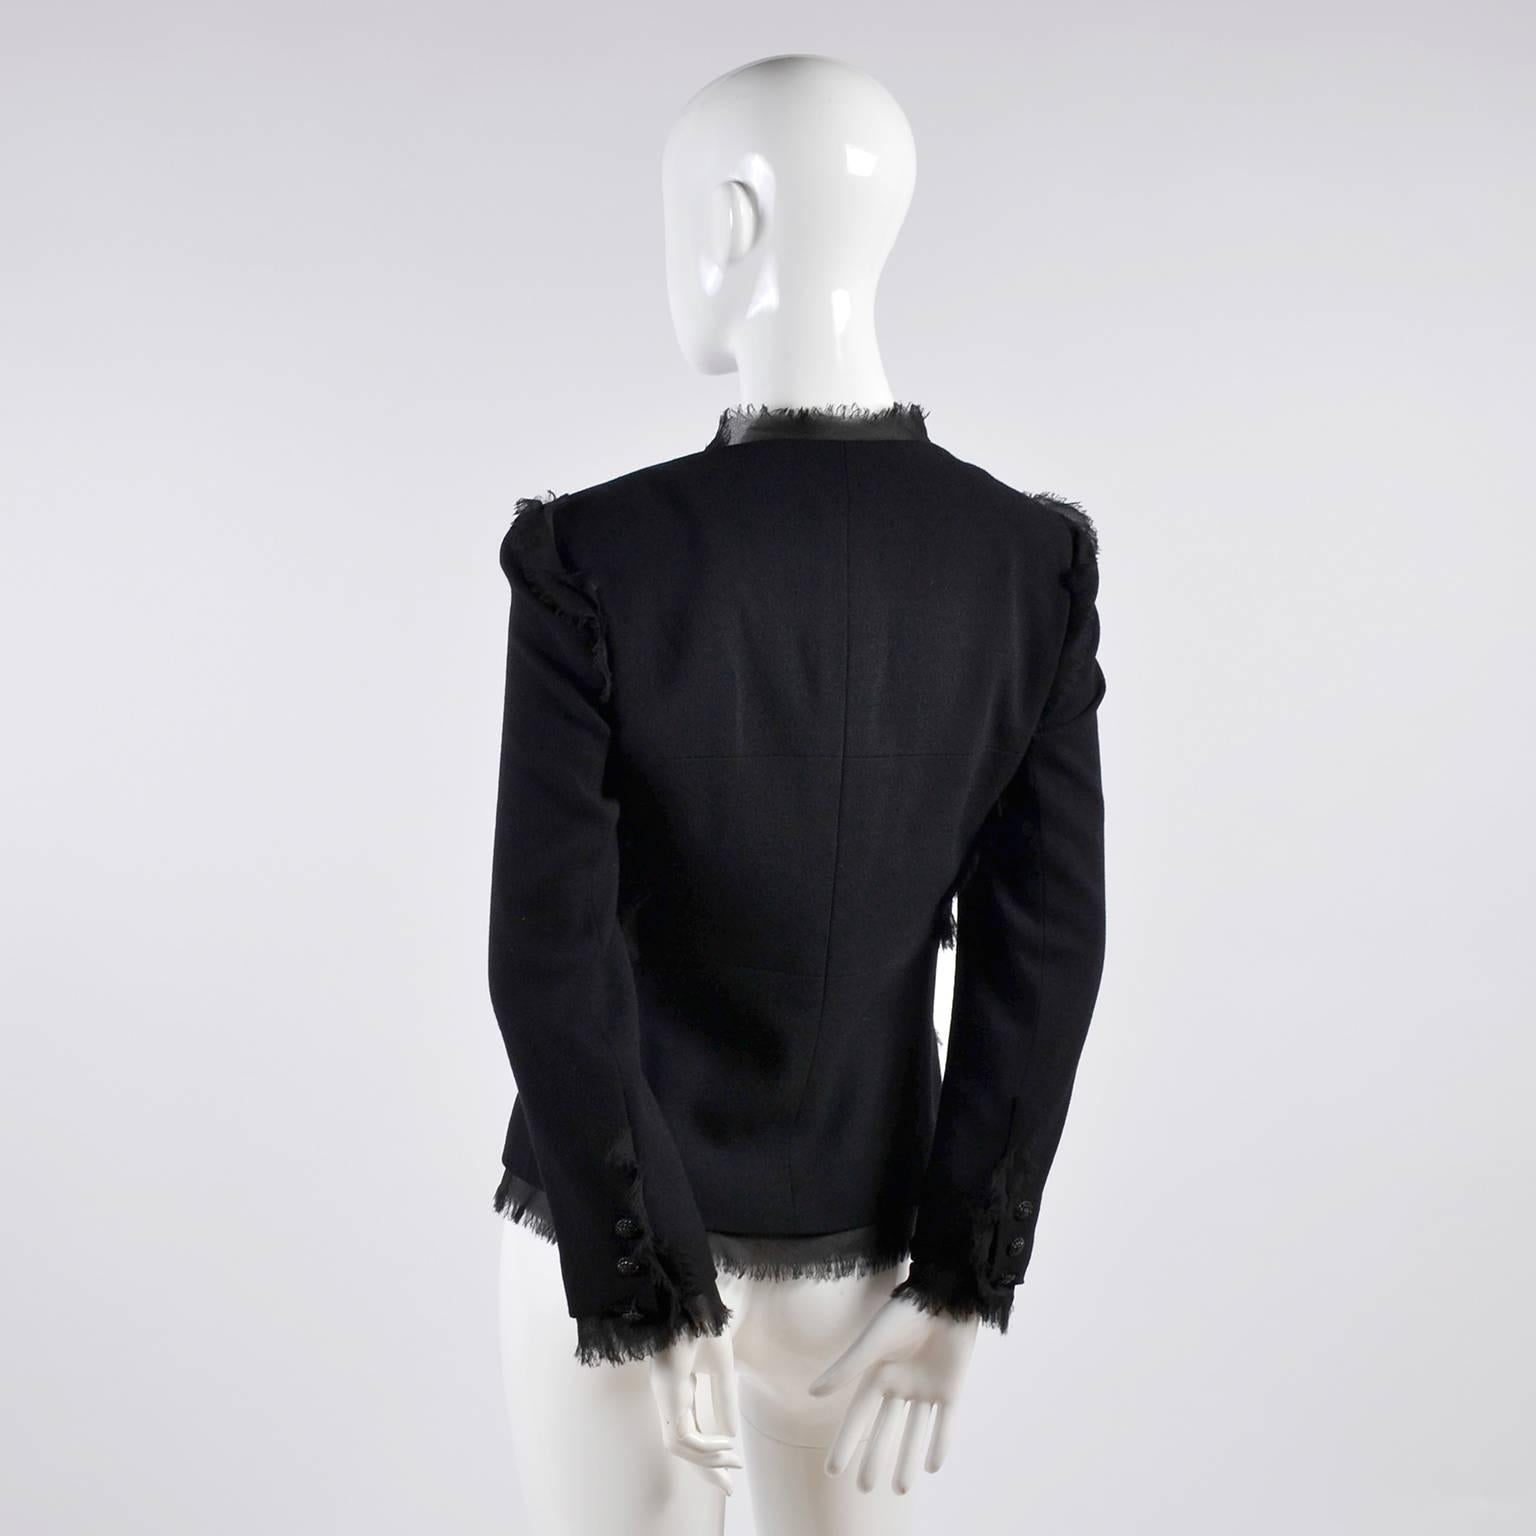 2004 Black Silk & Wool Chanel Jacket Ruching W Frayed Edges New w/ Tag 04 Sz 38 1